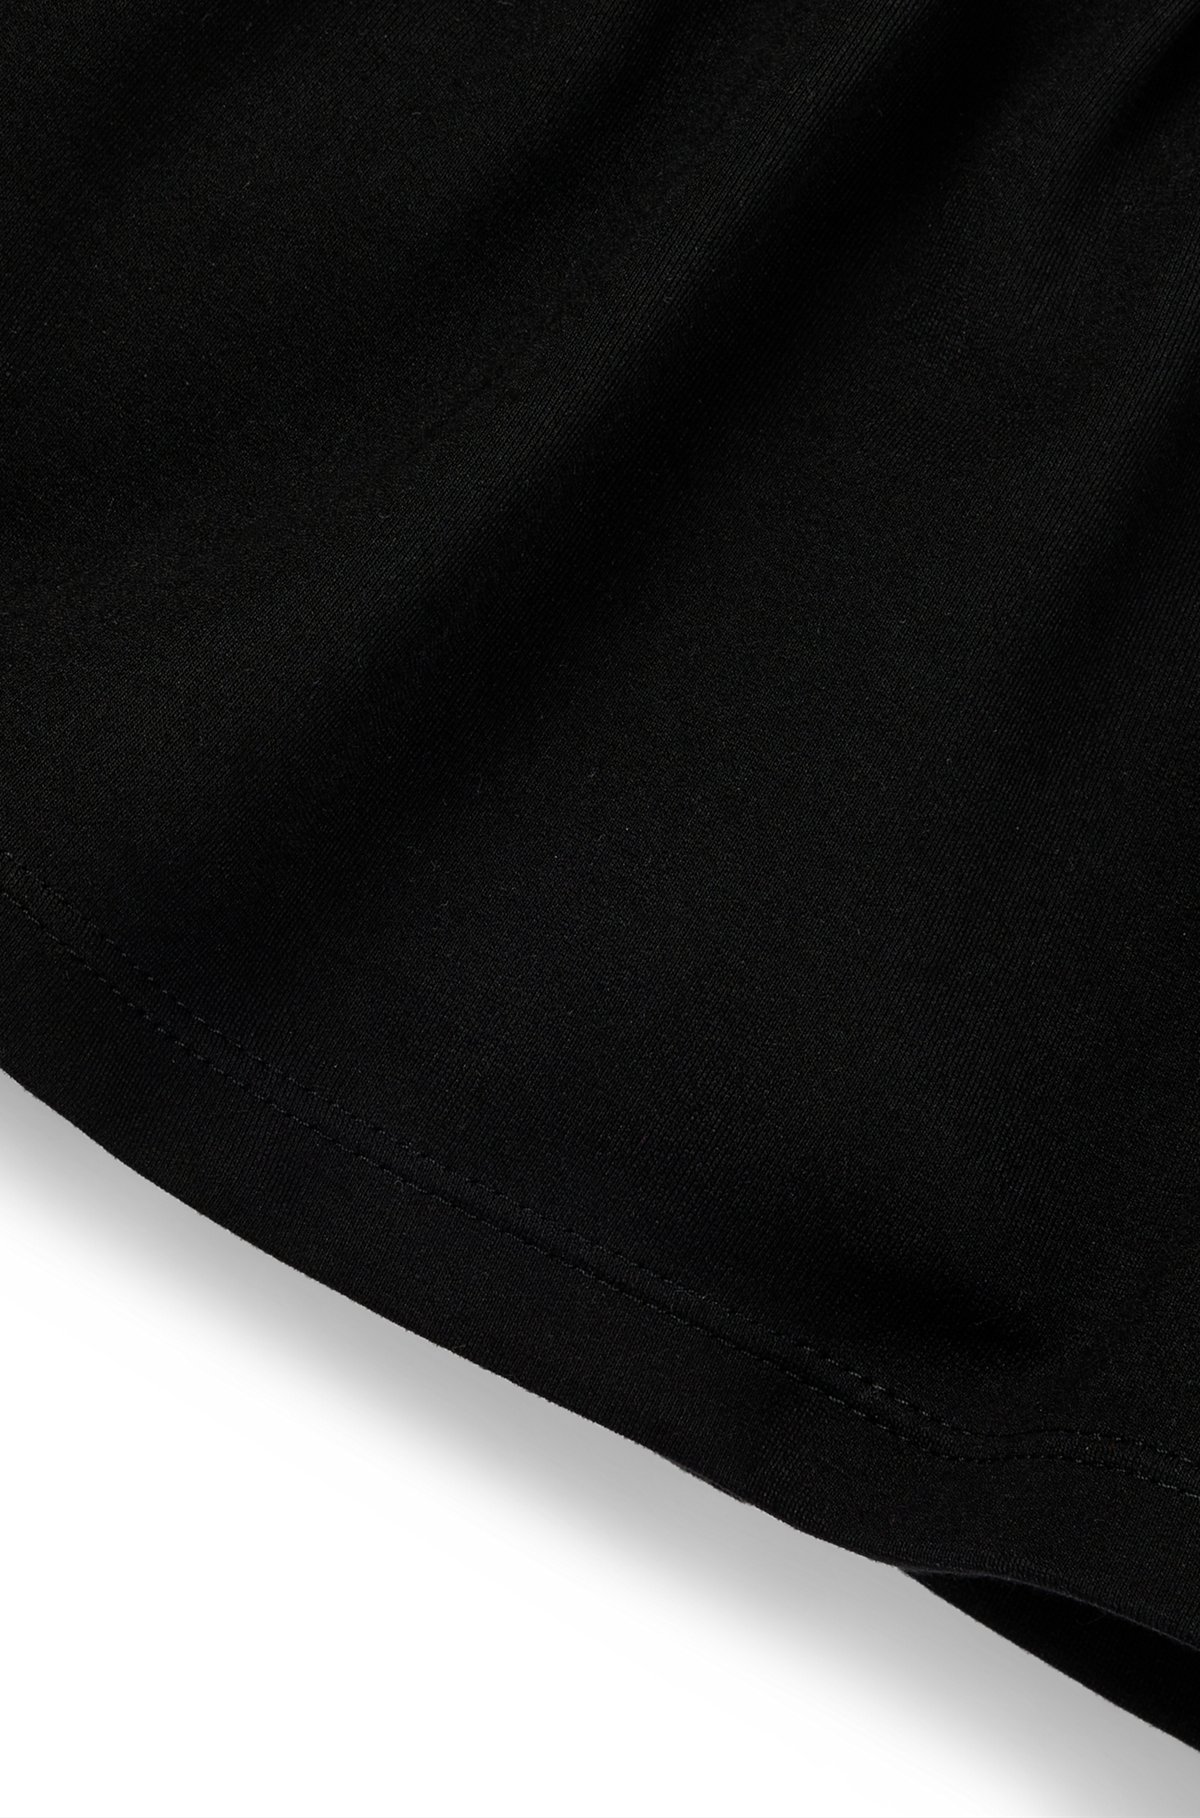 키즈 로고 아트워크 롱 슬리브 드레스, 블랙